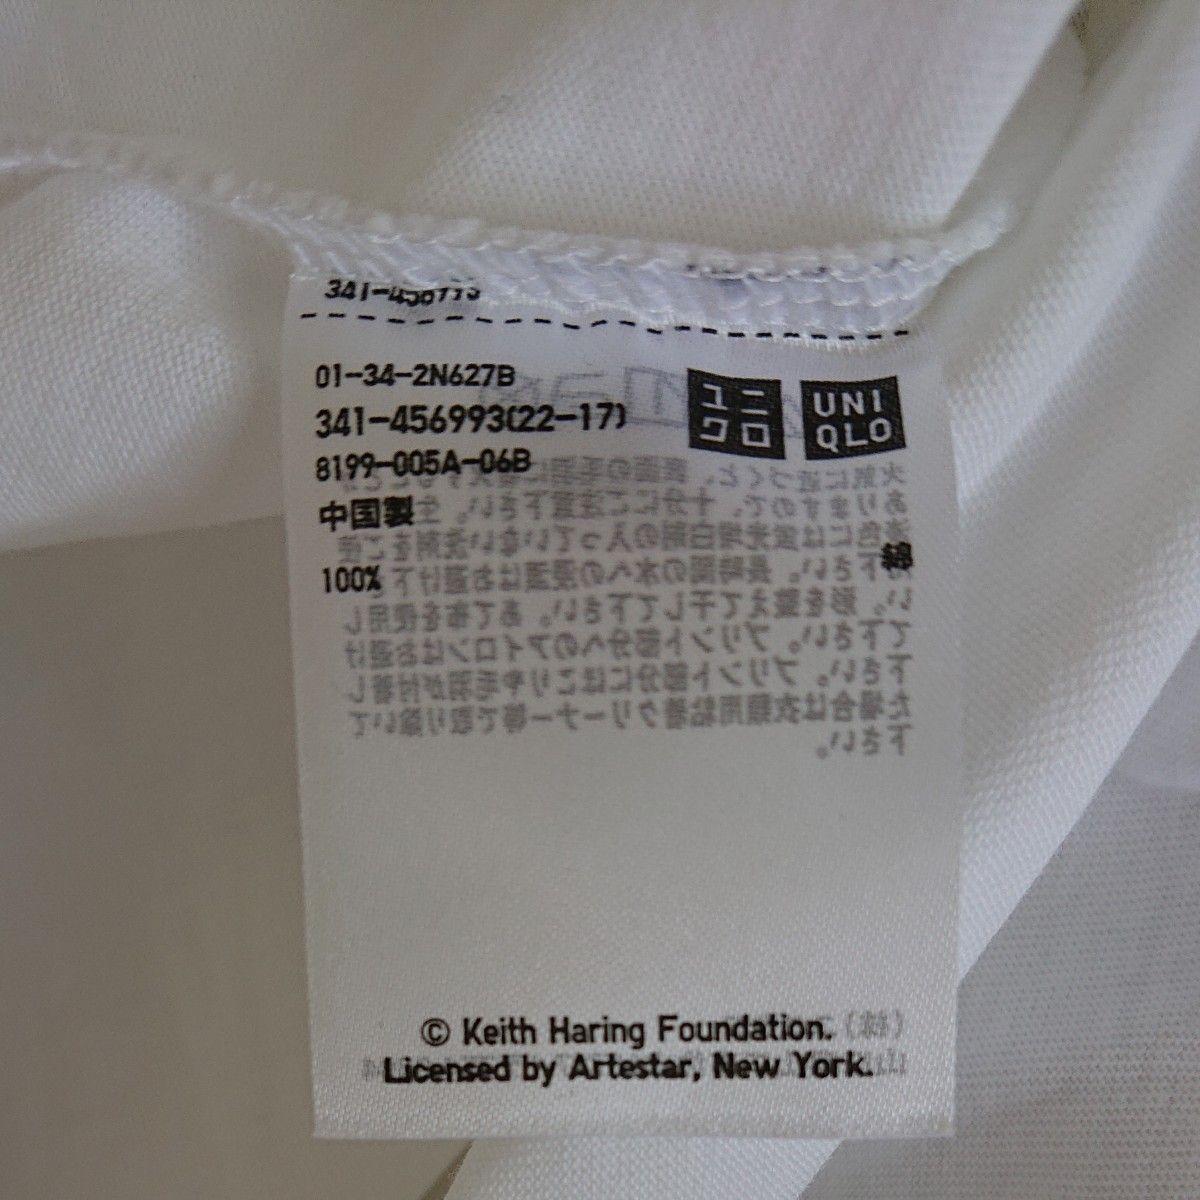 【新品未使用】UNIQLO ユニクロ  ホワイト 半袖 Tシャツ 白 UT キースへリング M